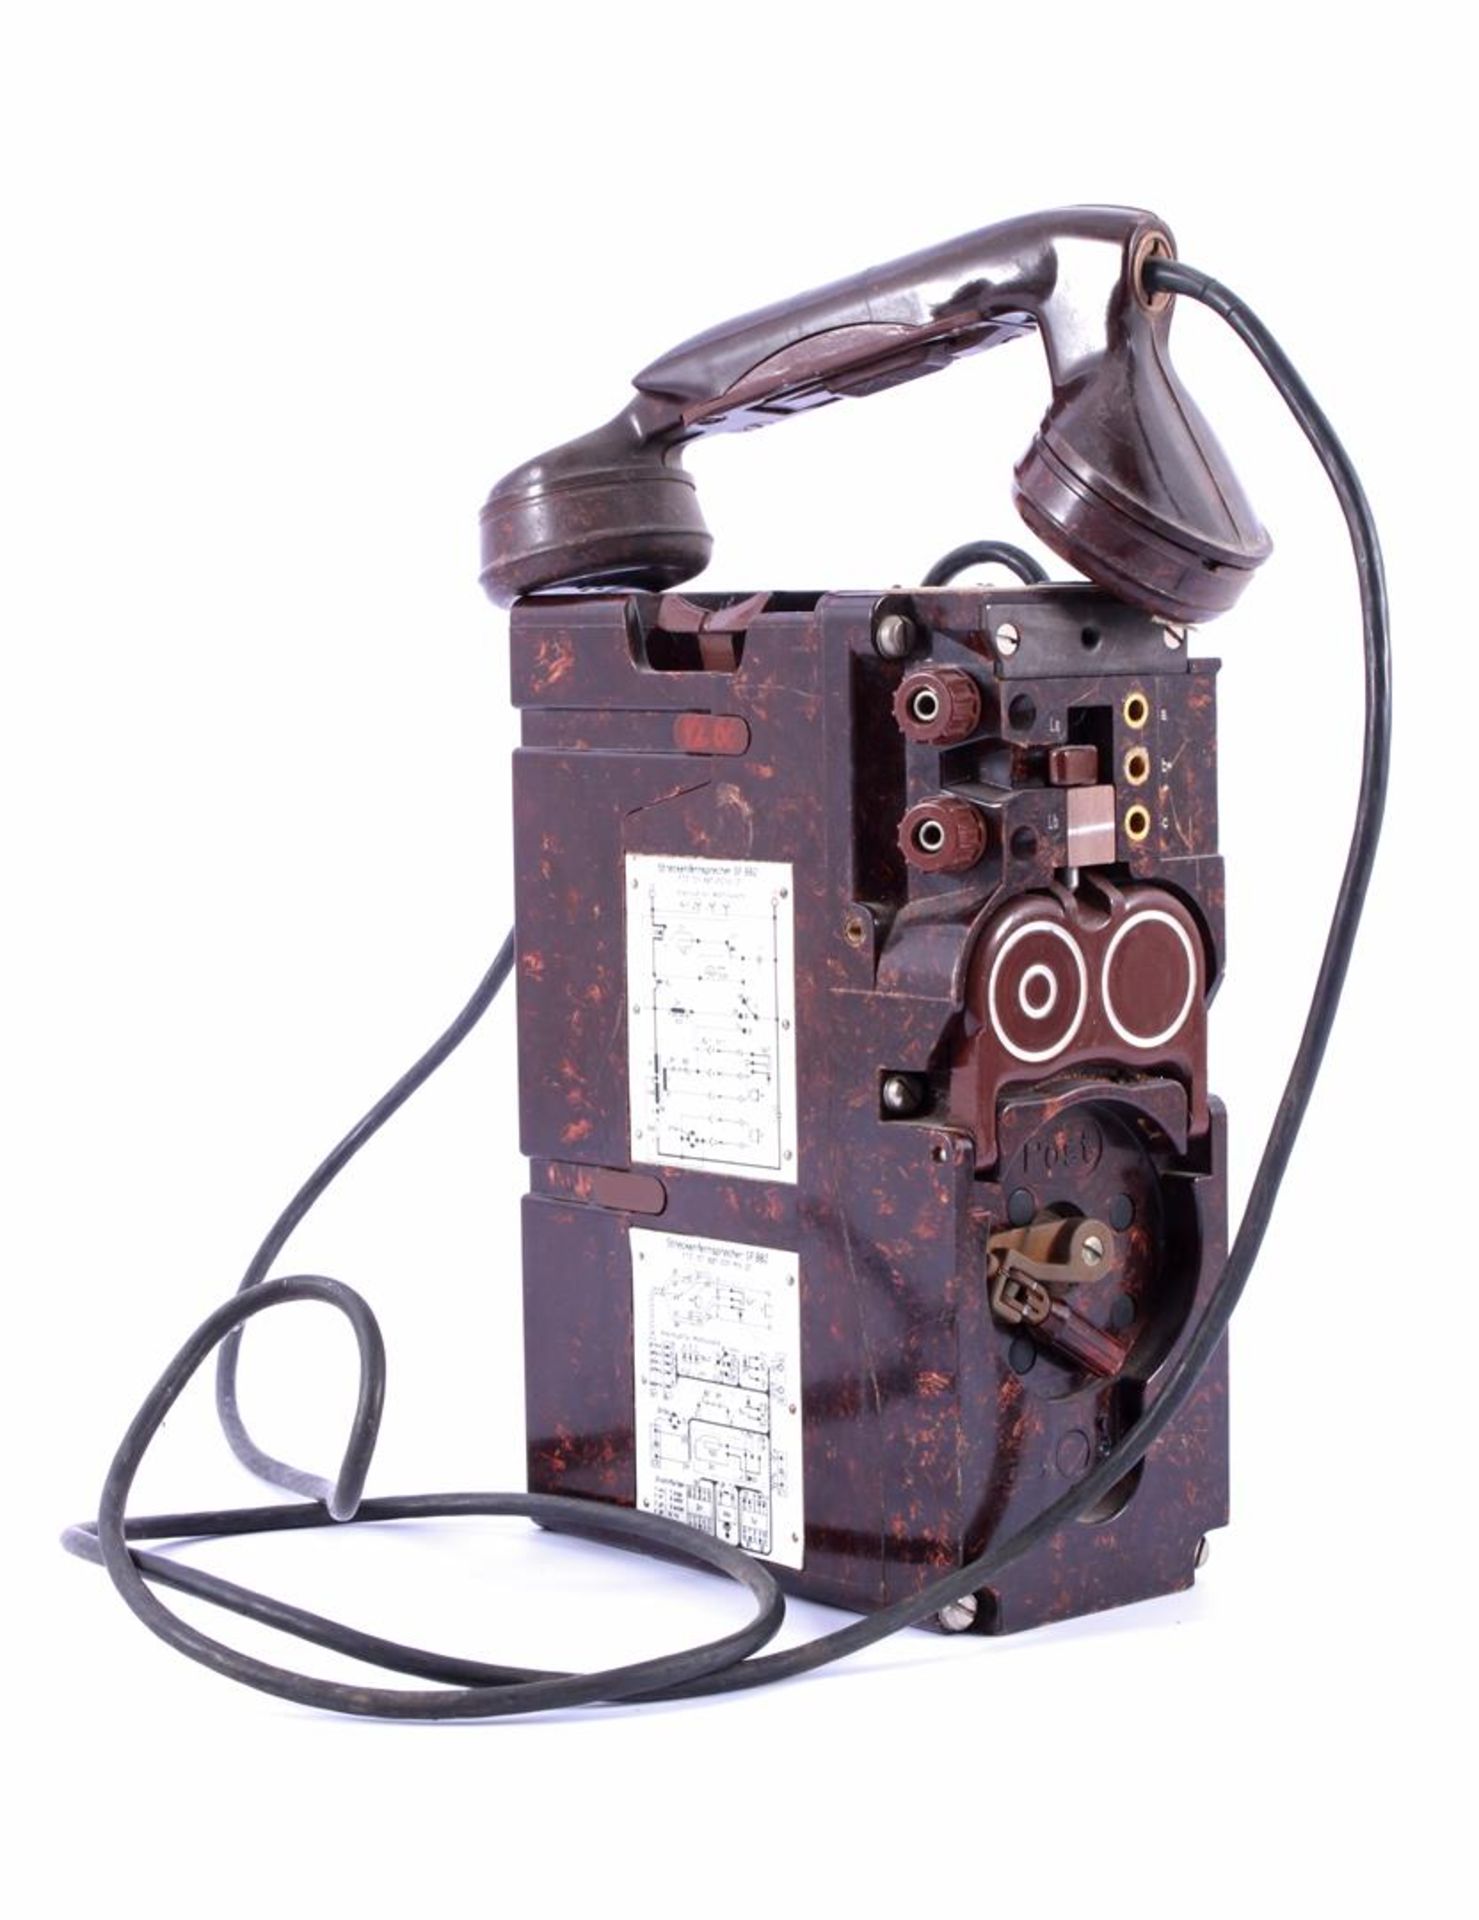 Duitse Streckenfernsprecher SF882 veldtelefoon in bakelieten kast, omstreeks 1960, 23,5x15,5 cm